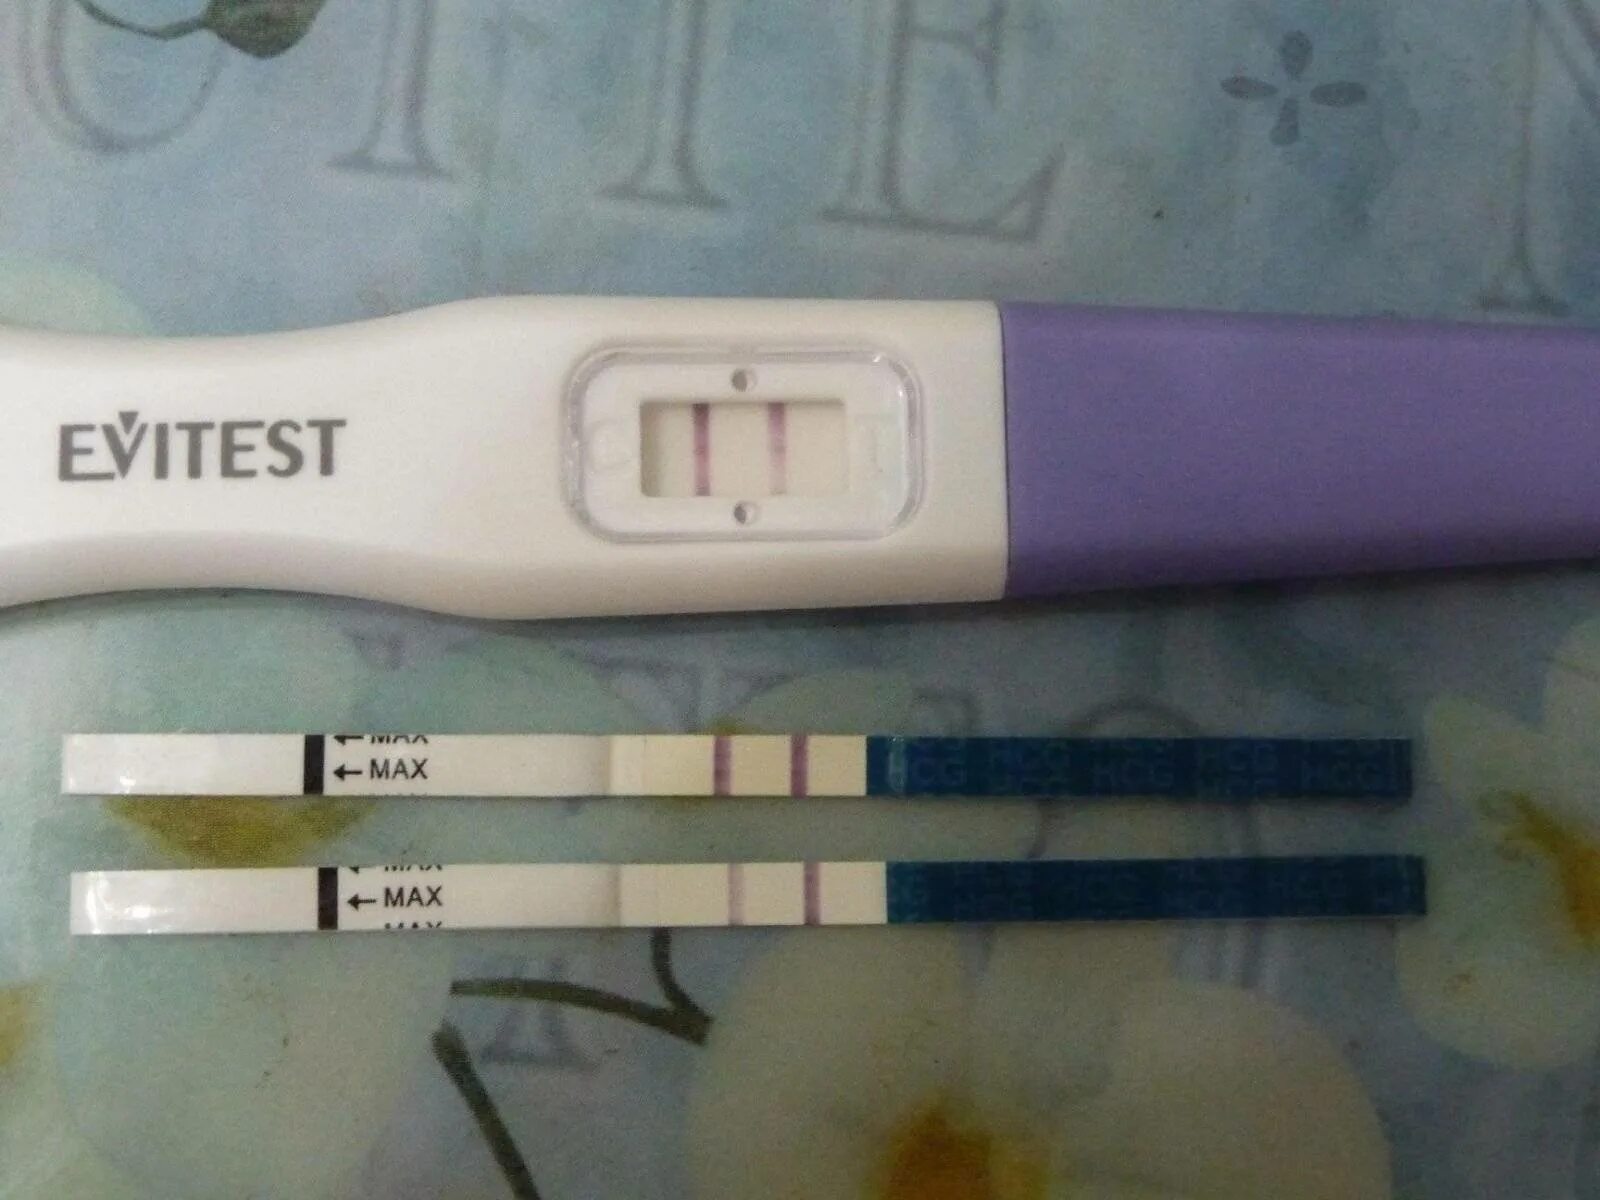 Есть ли беременность если тест отрицательный. Тест на беременность 4 дня до задержки. Тест на беременность за 2-3 дня до задержки. Струйный тест эвитест за 3 дня до месячных. Тест на беременность 10 день цикла эвитест.